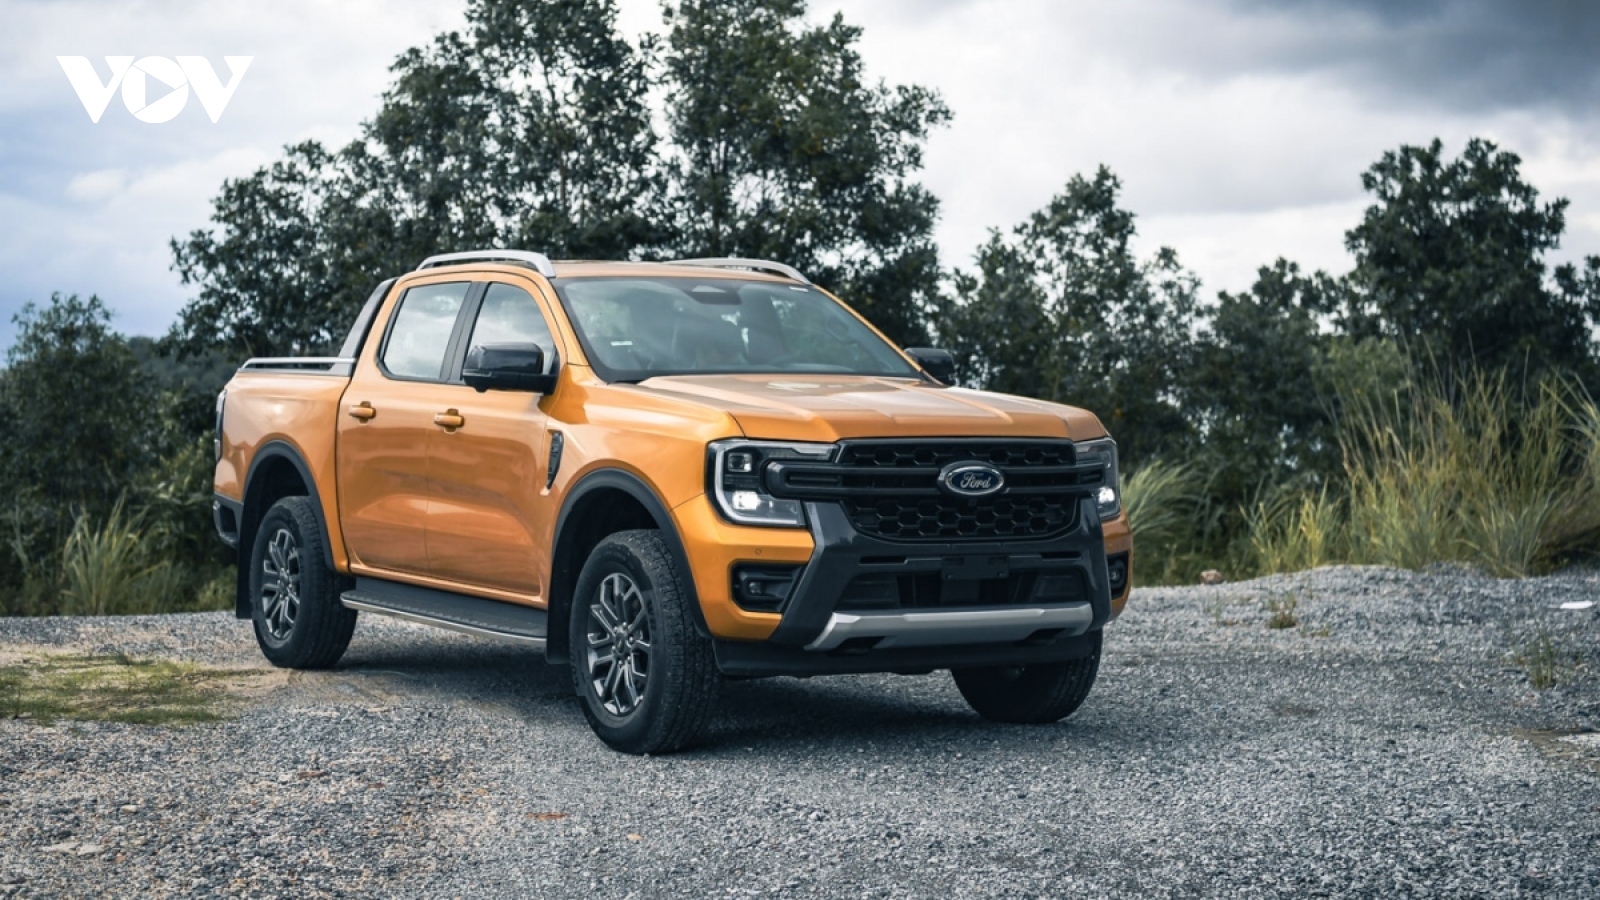 Top xe bán tải bán chạy nhất tháng 9: Ford Ranger lất át các đối thủ